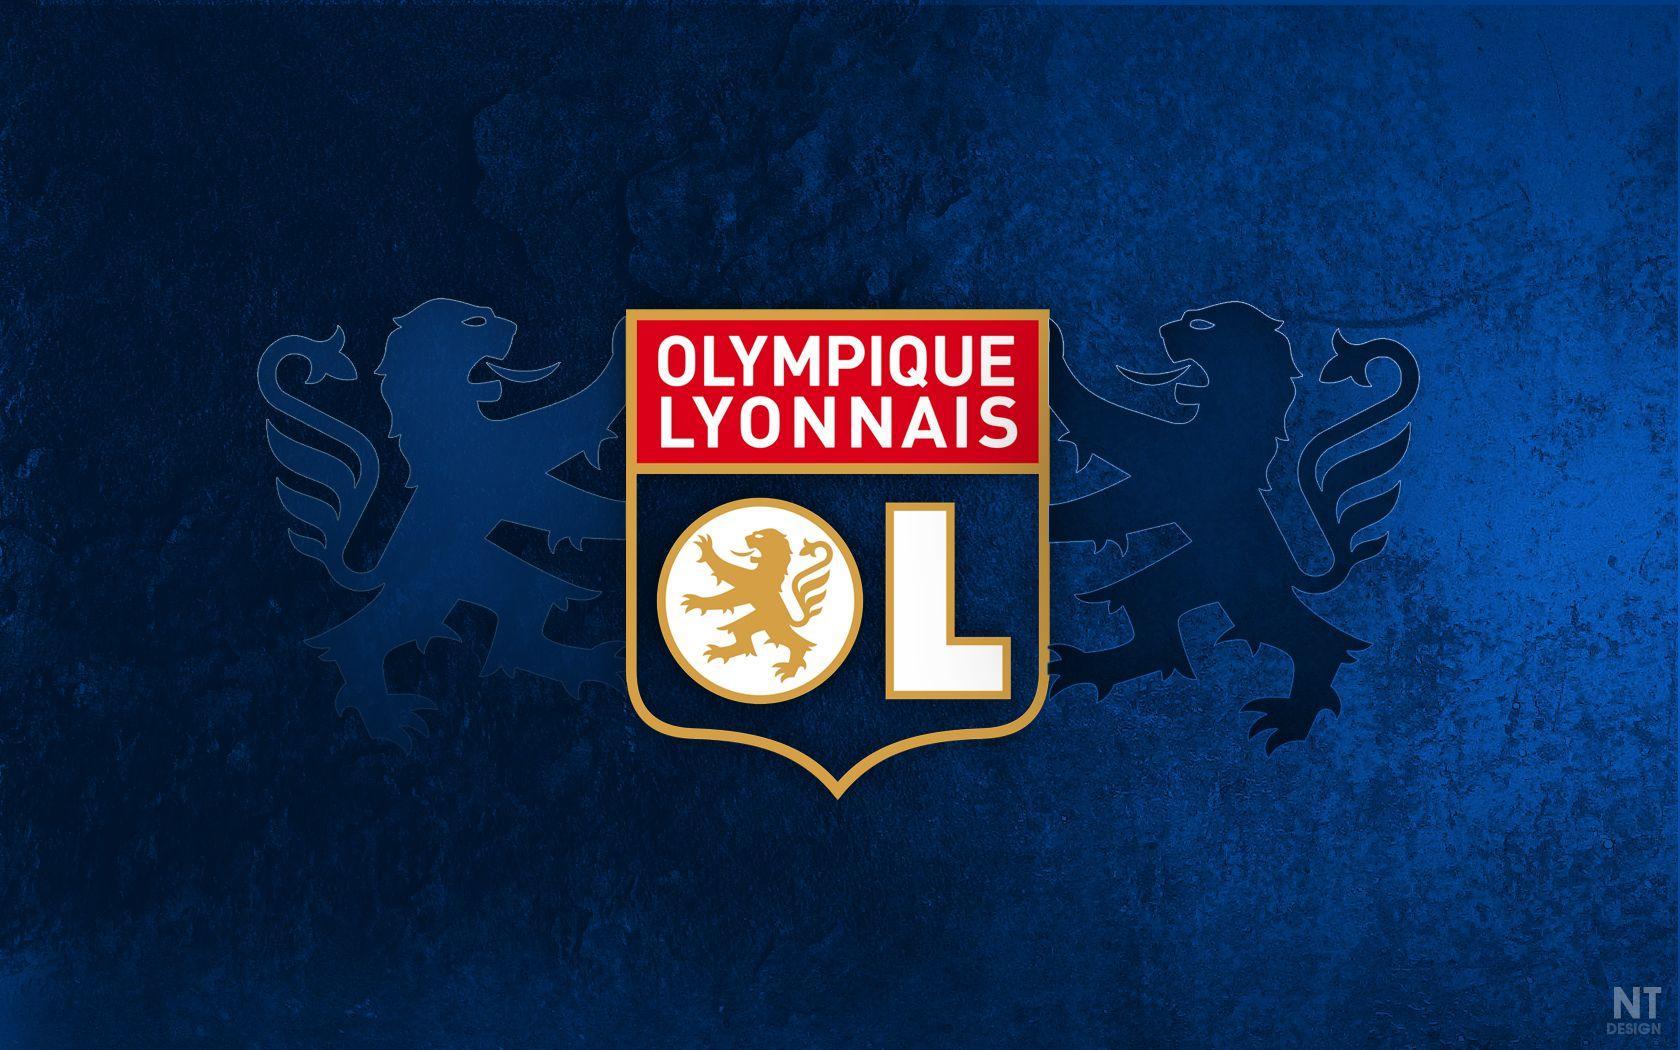 Olympique Lyonnais wallpapers collection